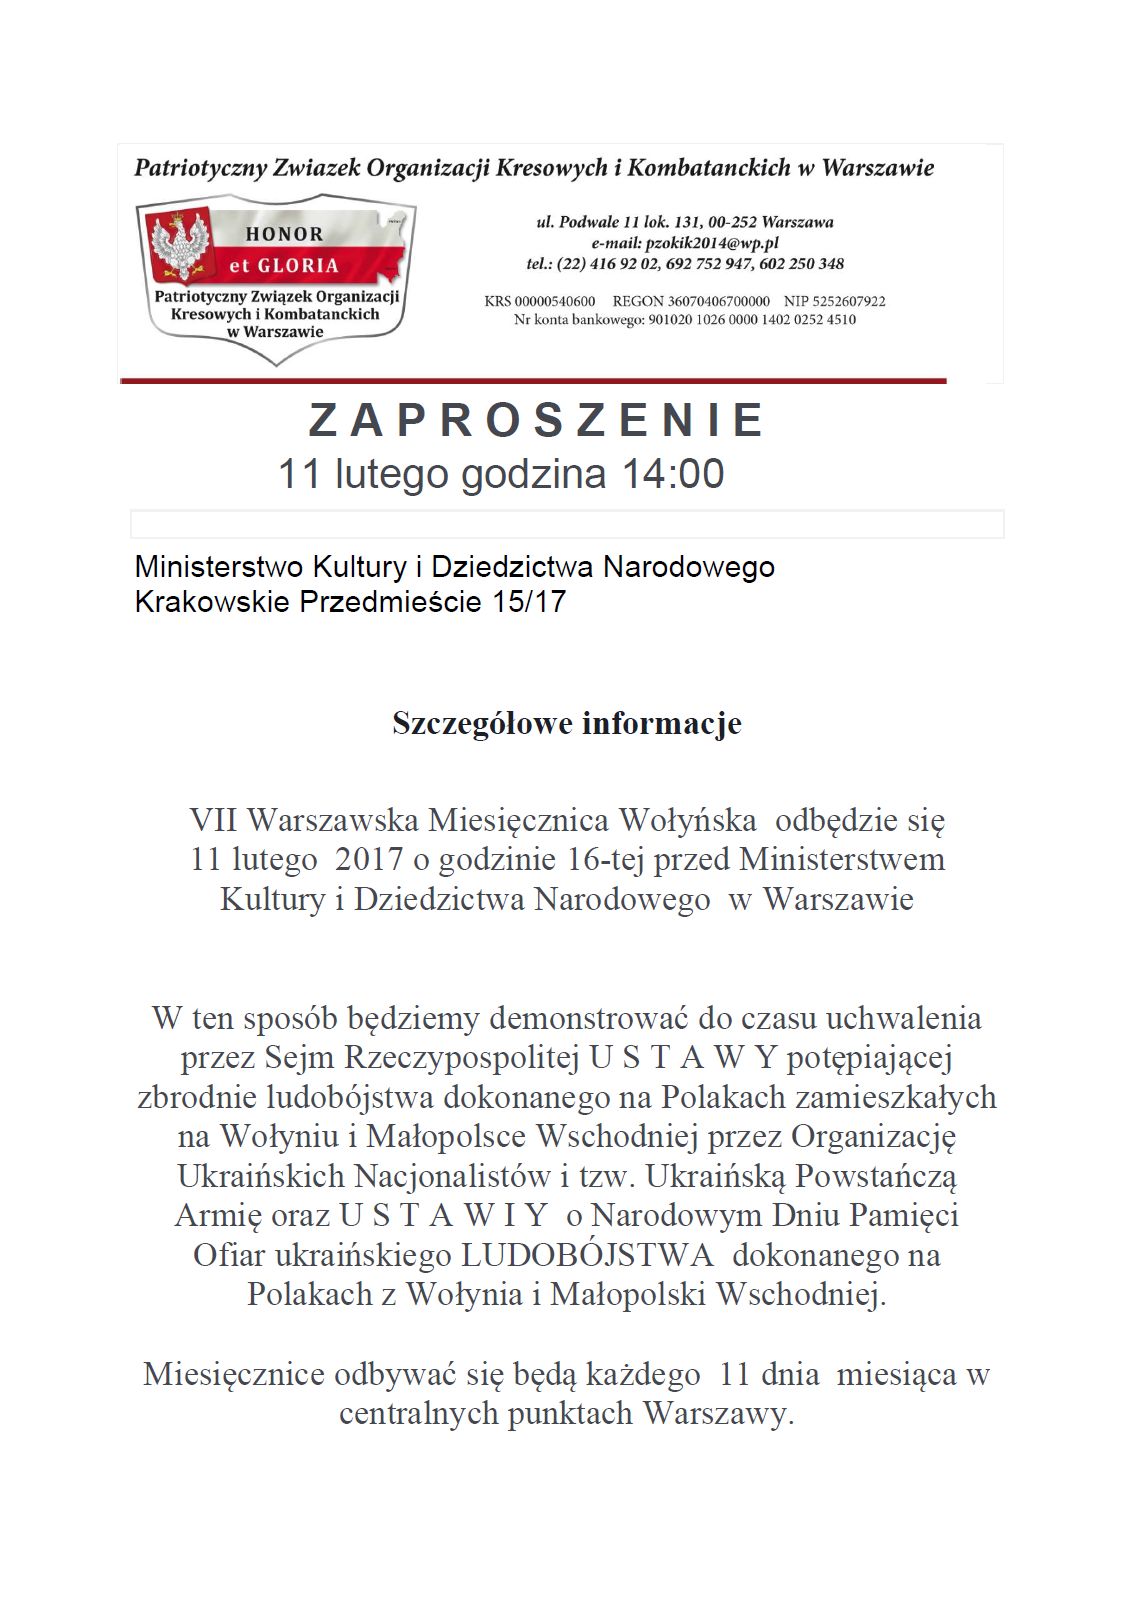 Zaproszenie PZOKiK 11 lutego Warszawa_VII_1